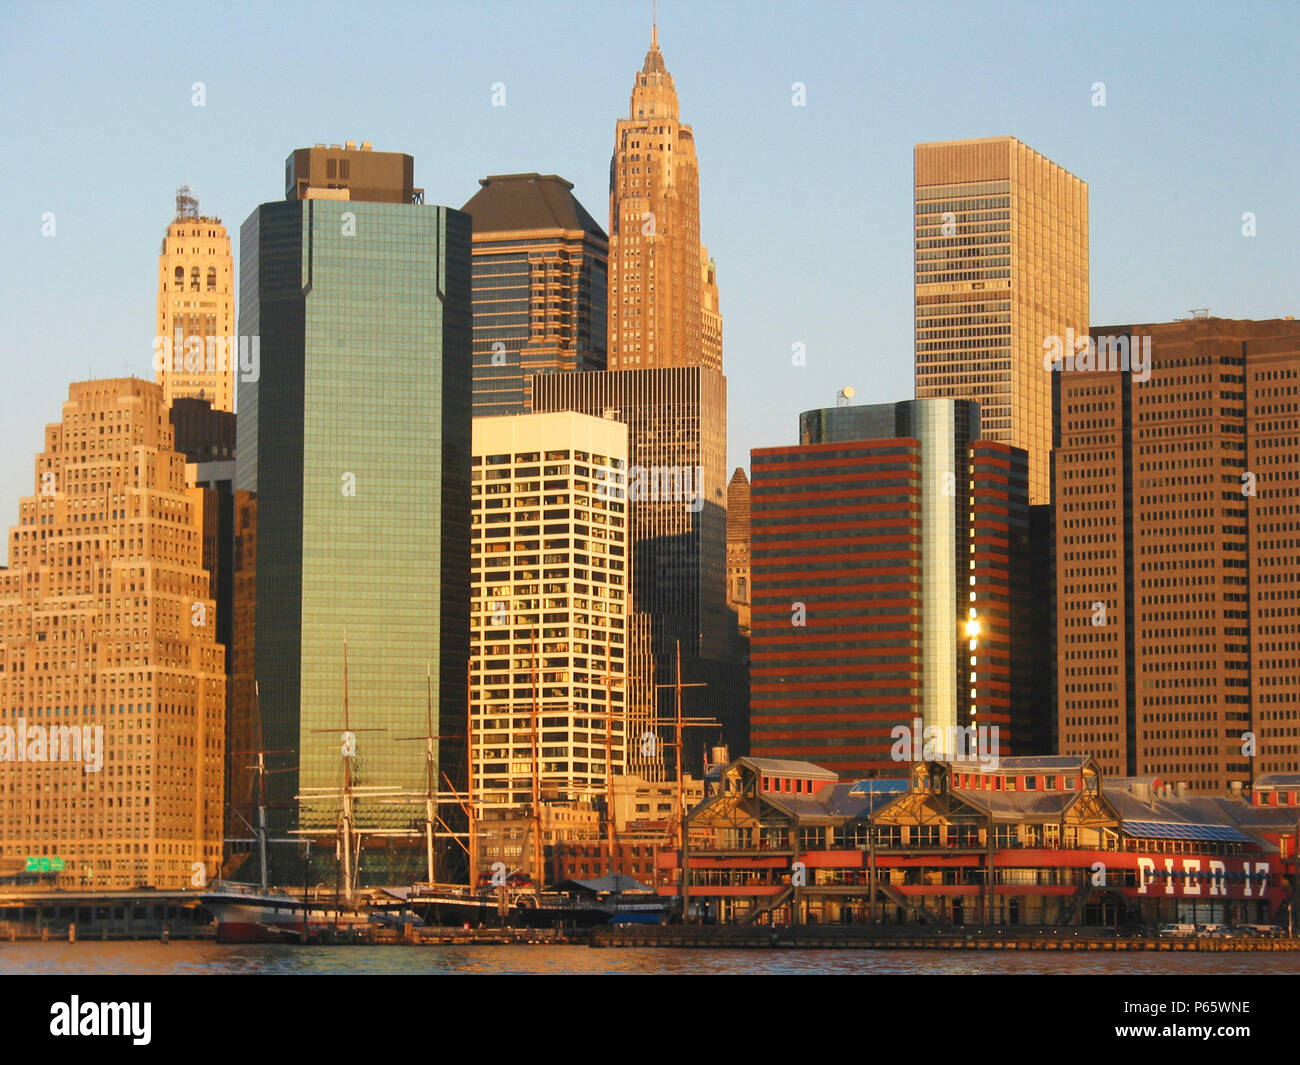 La economía de la ciudad de Nueva York, EE.UU.: ver al distrito financiero en el centro de Manhattan Foto de stock